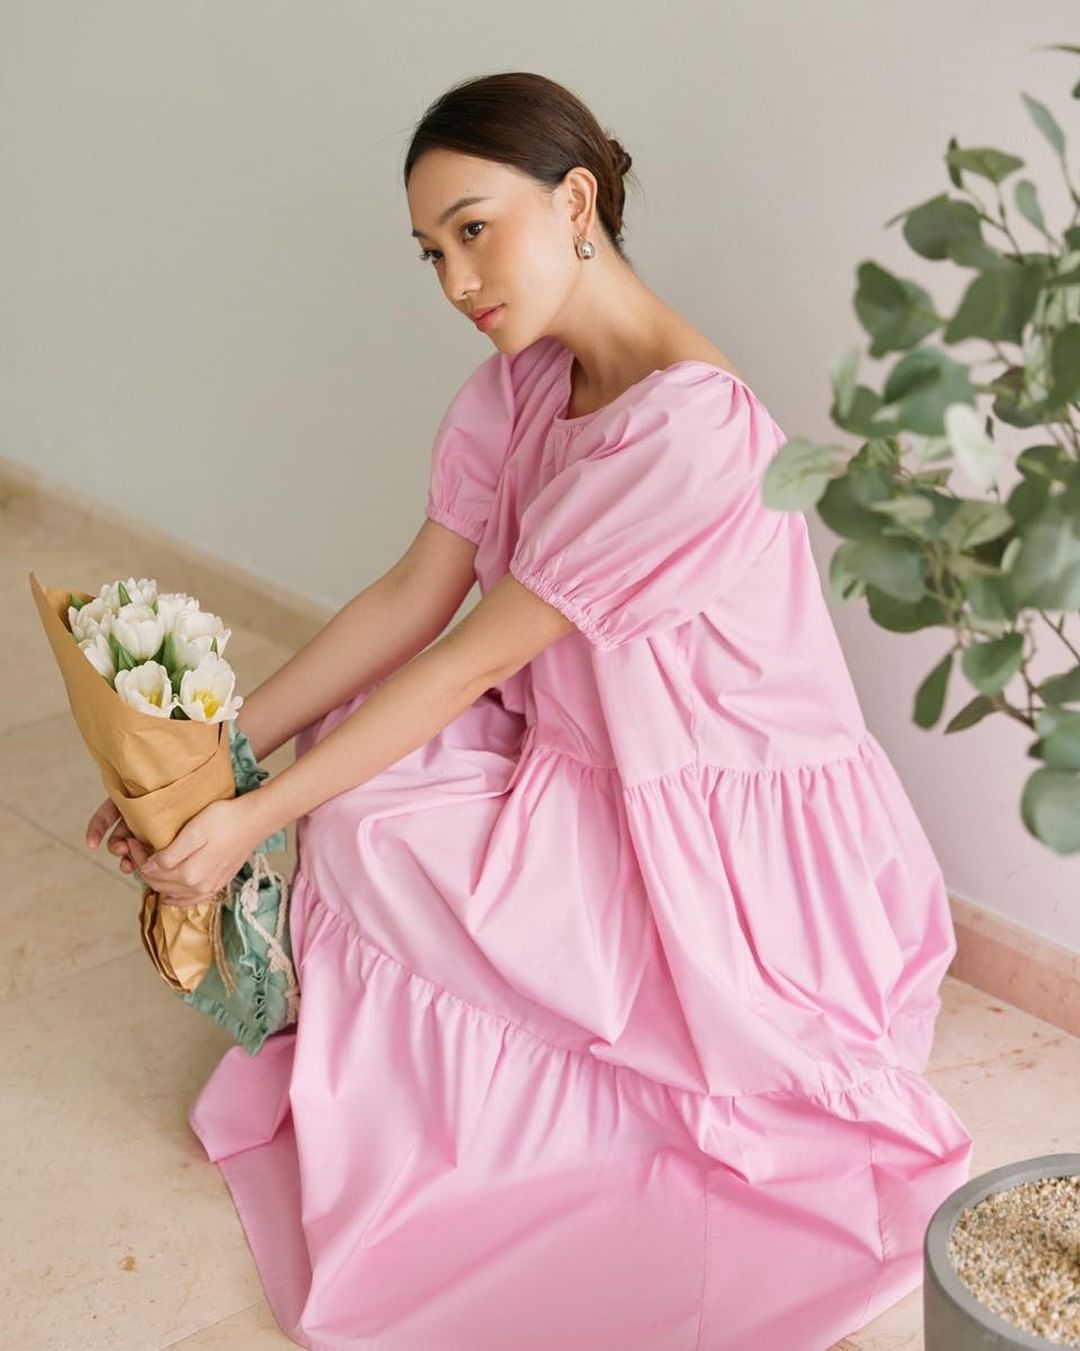 Đẳng cấp của Hà Tăng: mặc váy local brand vài trăm nghìn mà như hàng hiệu tiền triệu, khí chất ngời ngời chuẩn đại mỹ nhân - Ảnh 3.